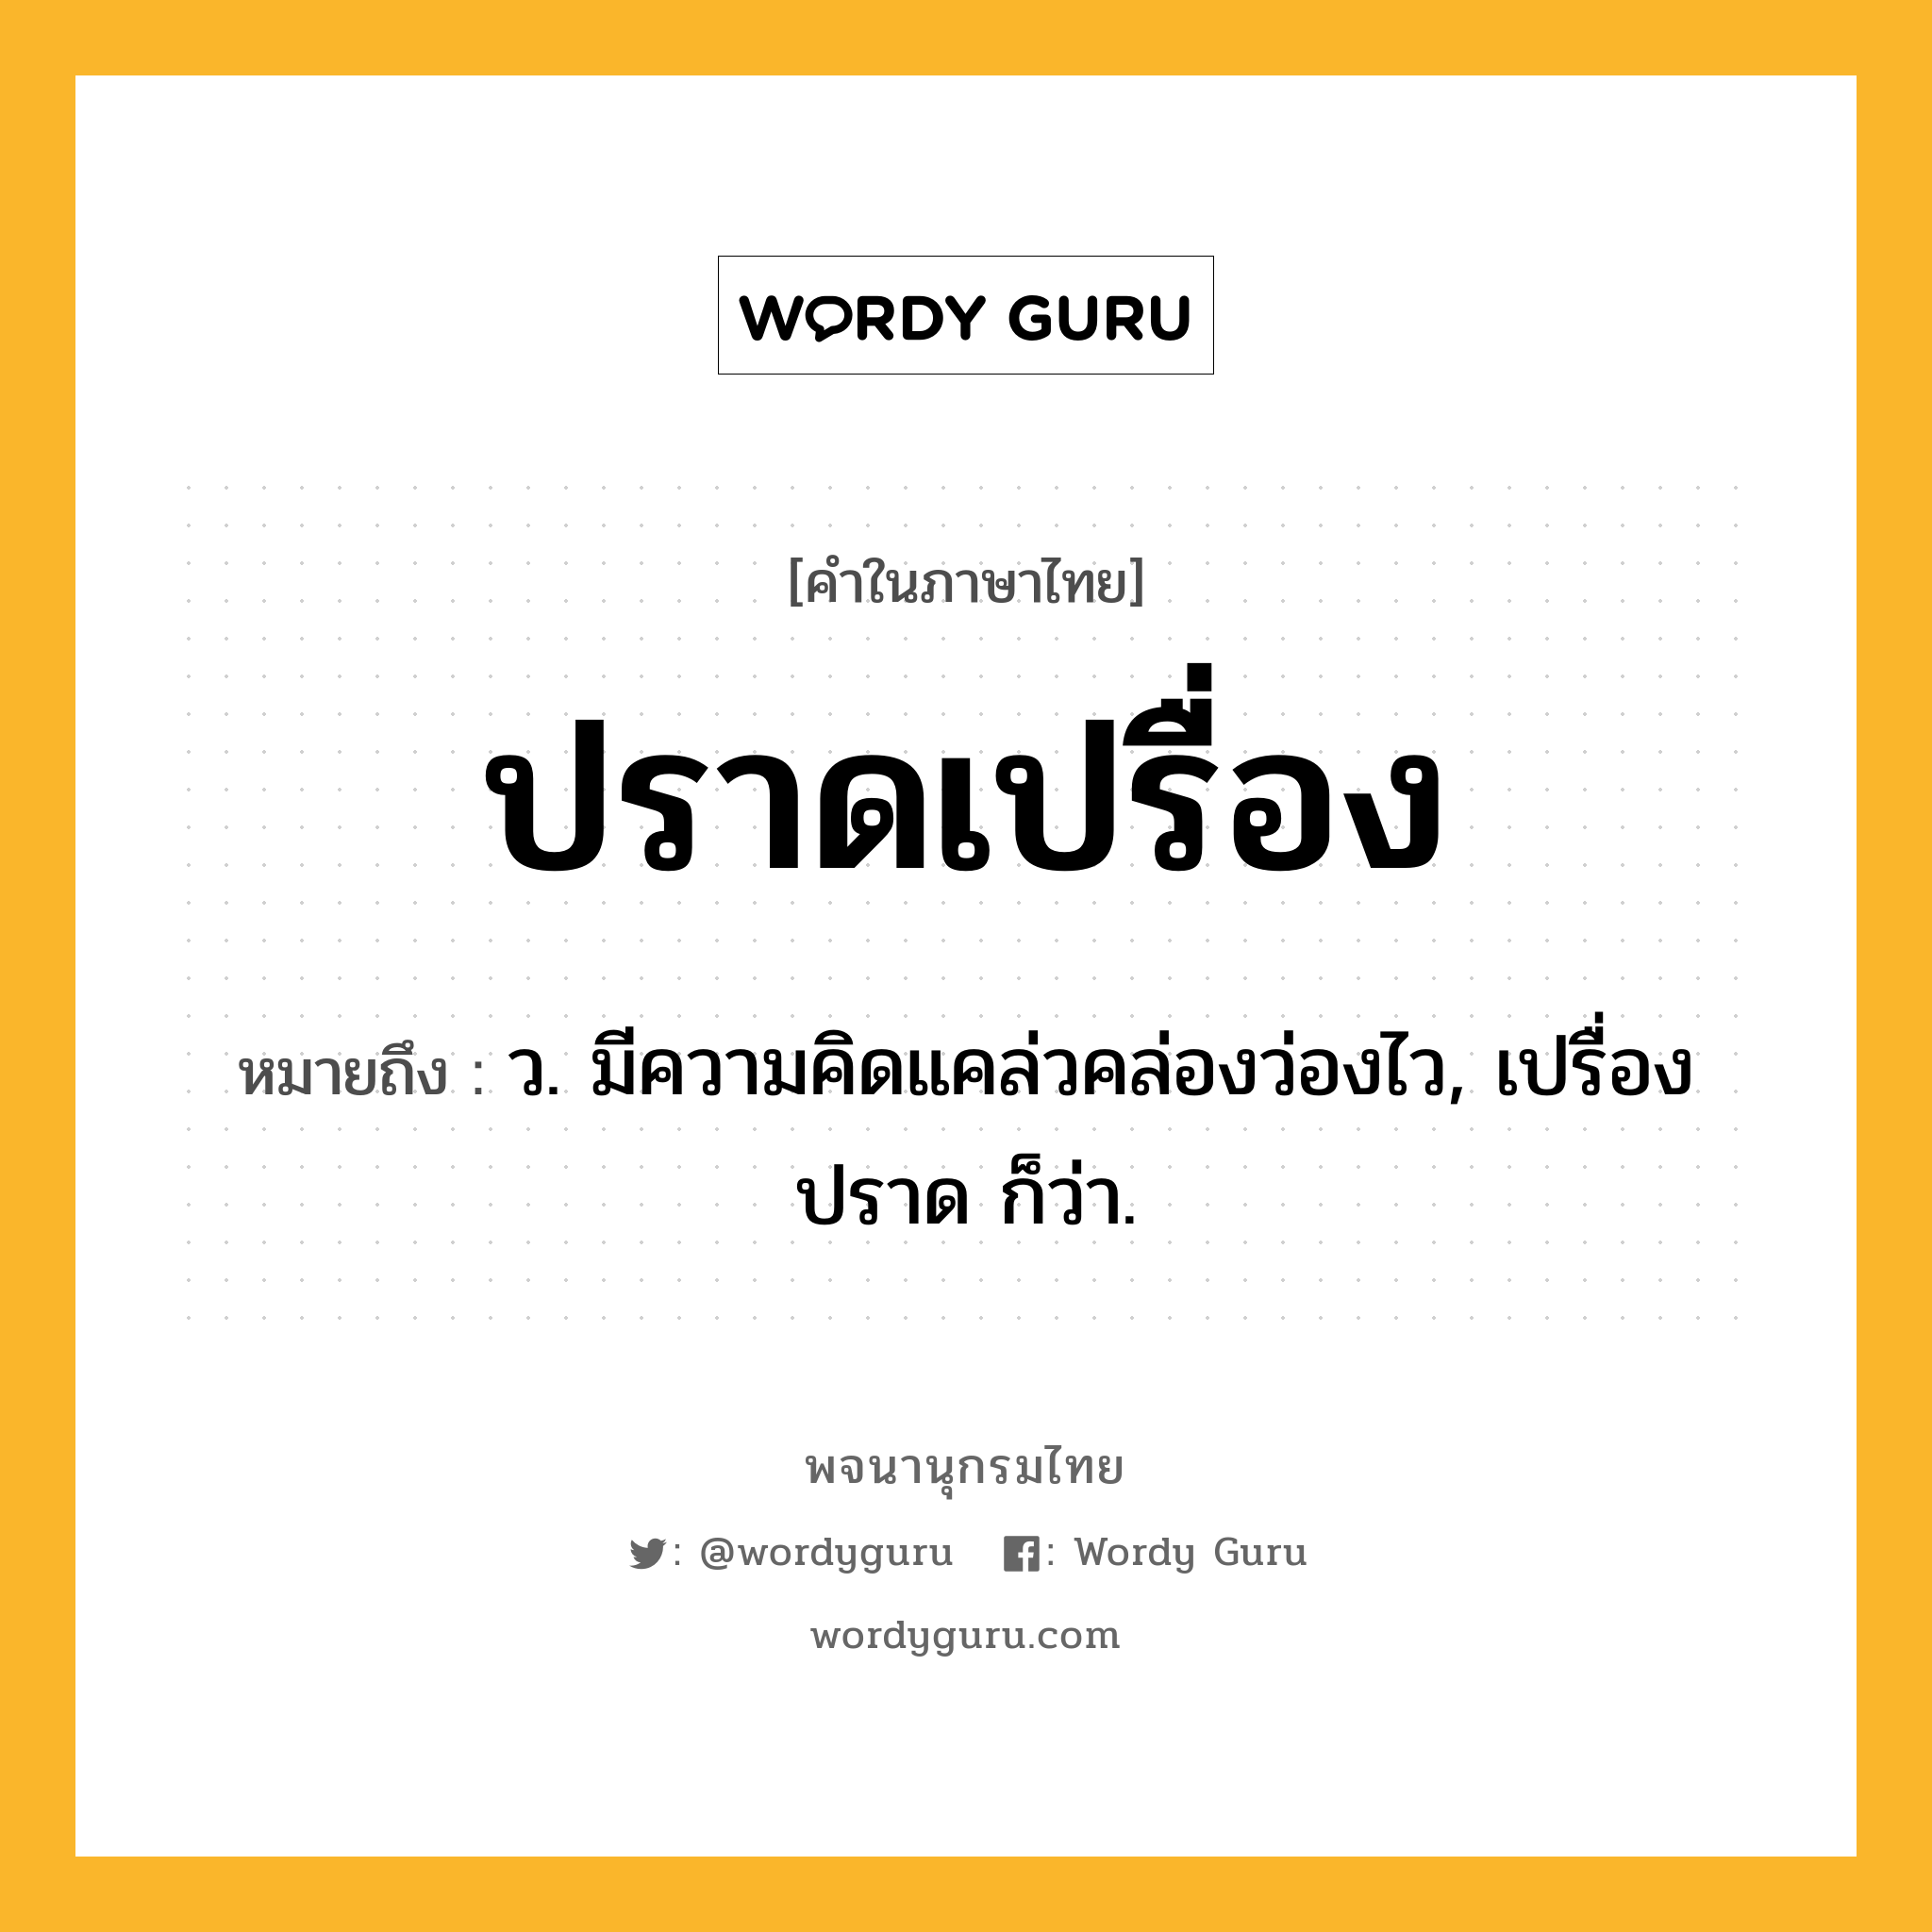 ปราดเปรื่อง หมายถึงอะไร?, คำในภาษาไทย ปราดเปรื่อง หมายถึง ว. มีความคิดแคล่วคล่องว่องไว, เปรื่องปราด ก็ว่า.